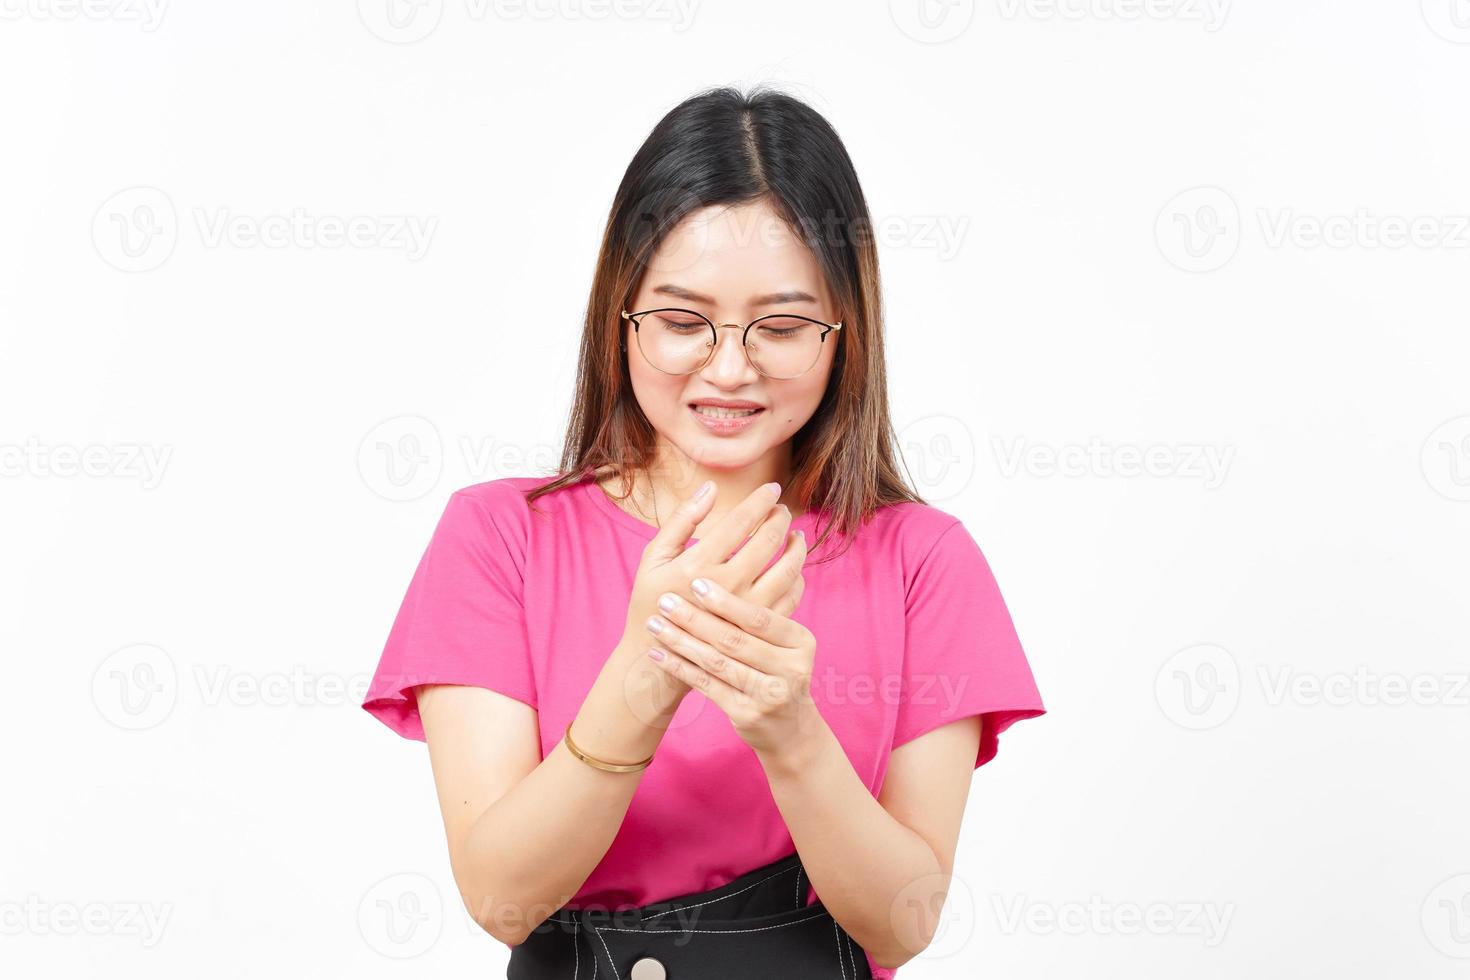 souffrant de douleurs sur les mains d'une belle femme asiatique isolée sur fond blanc photo